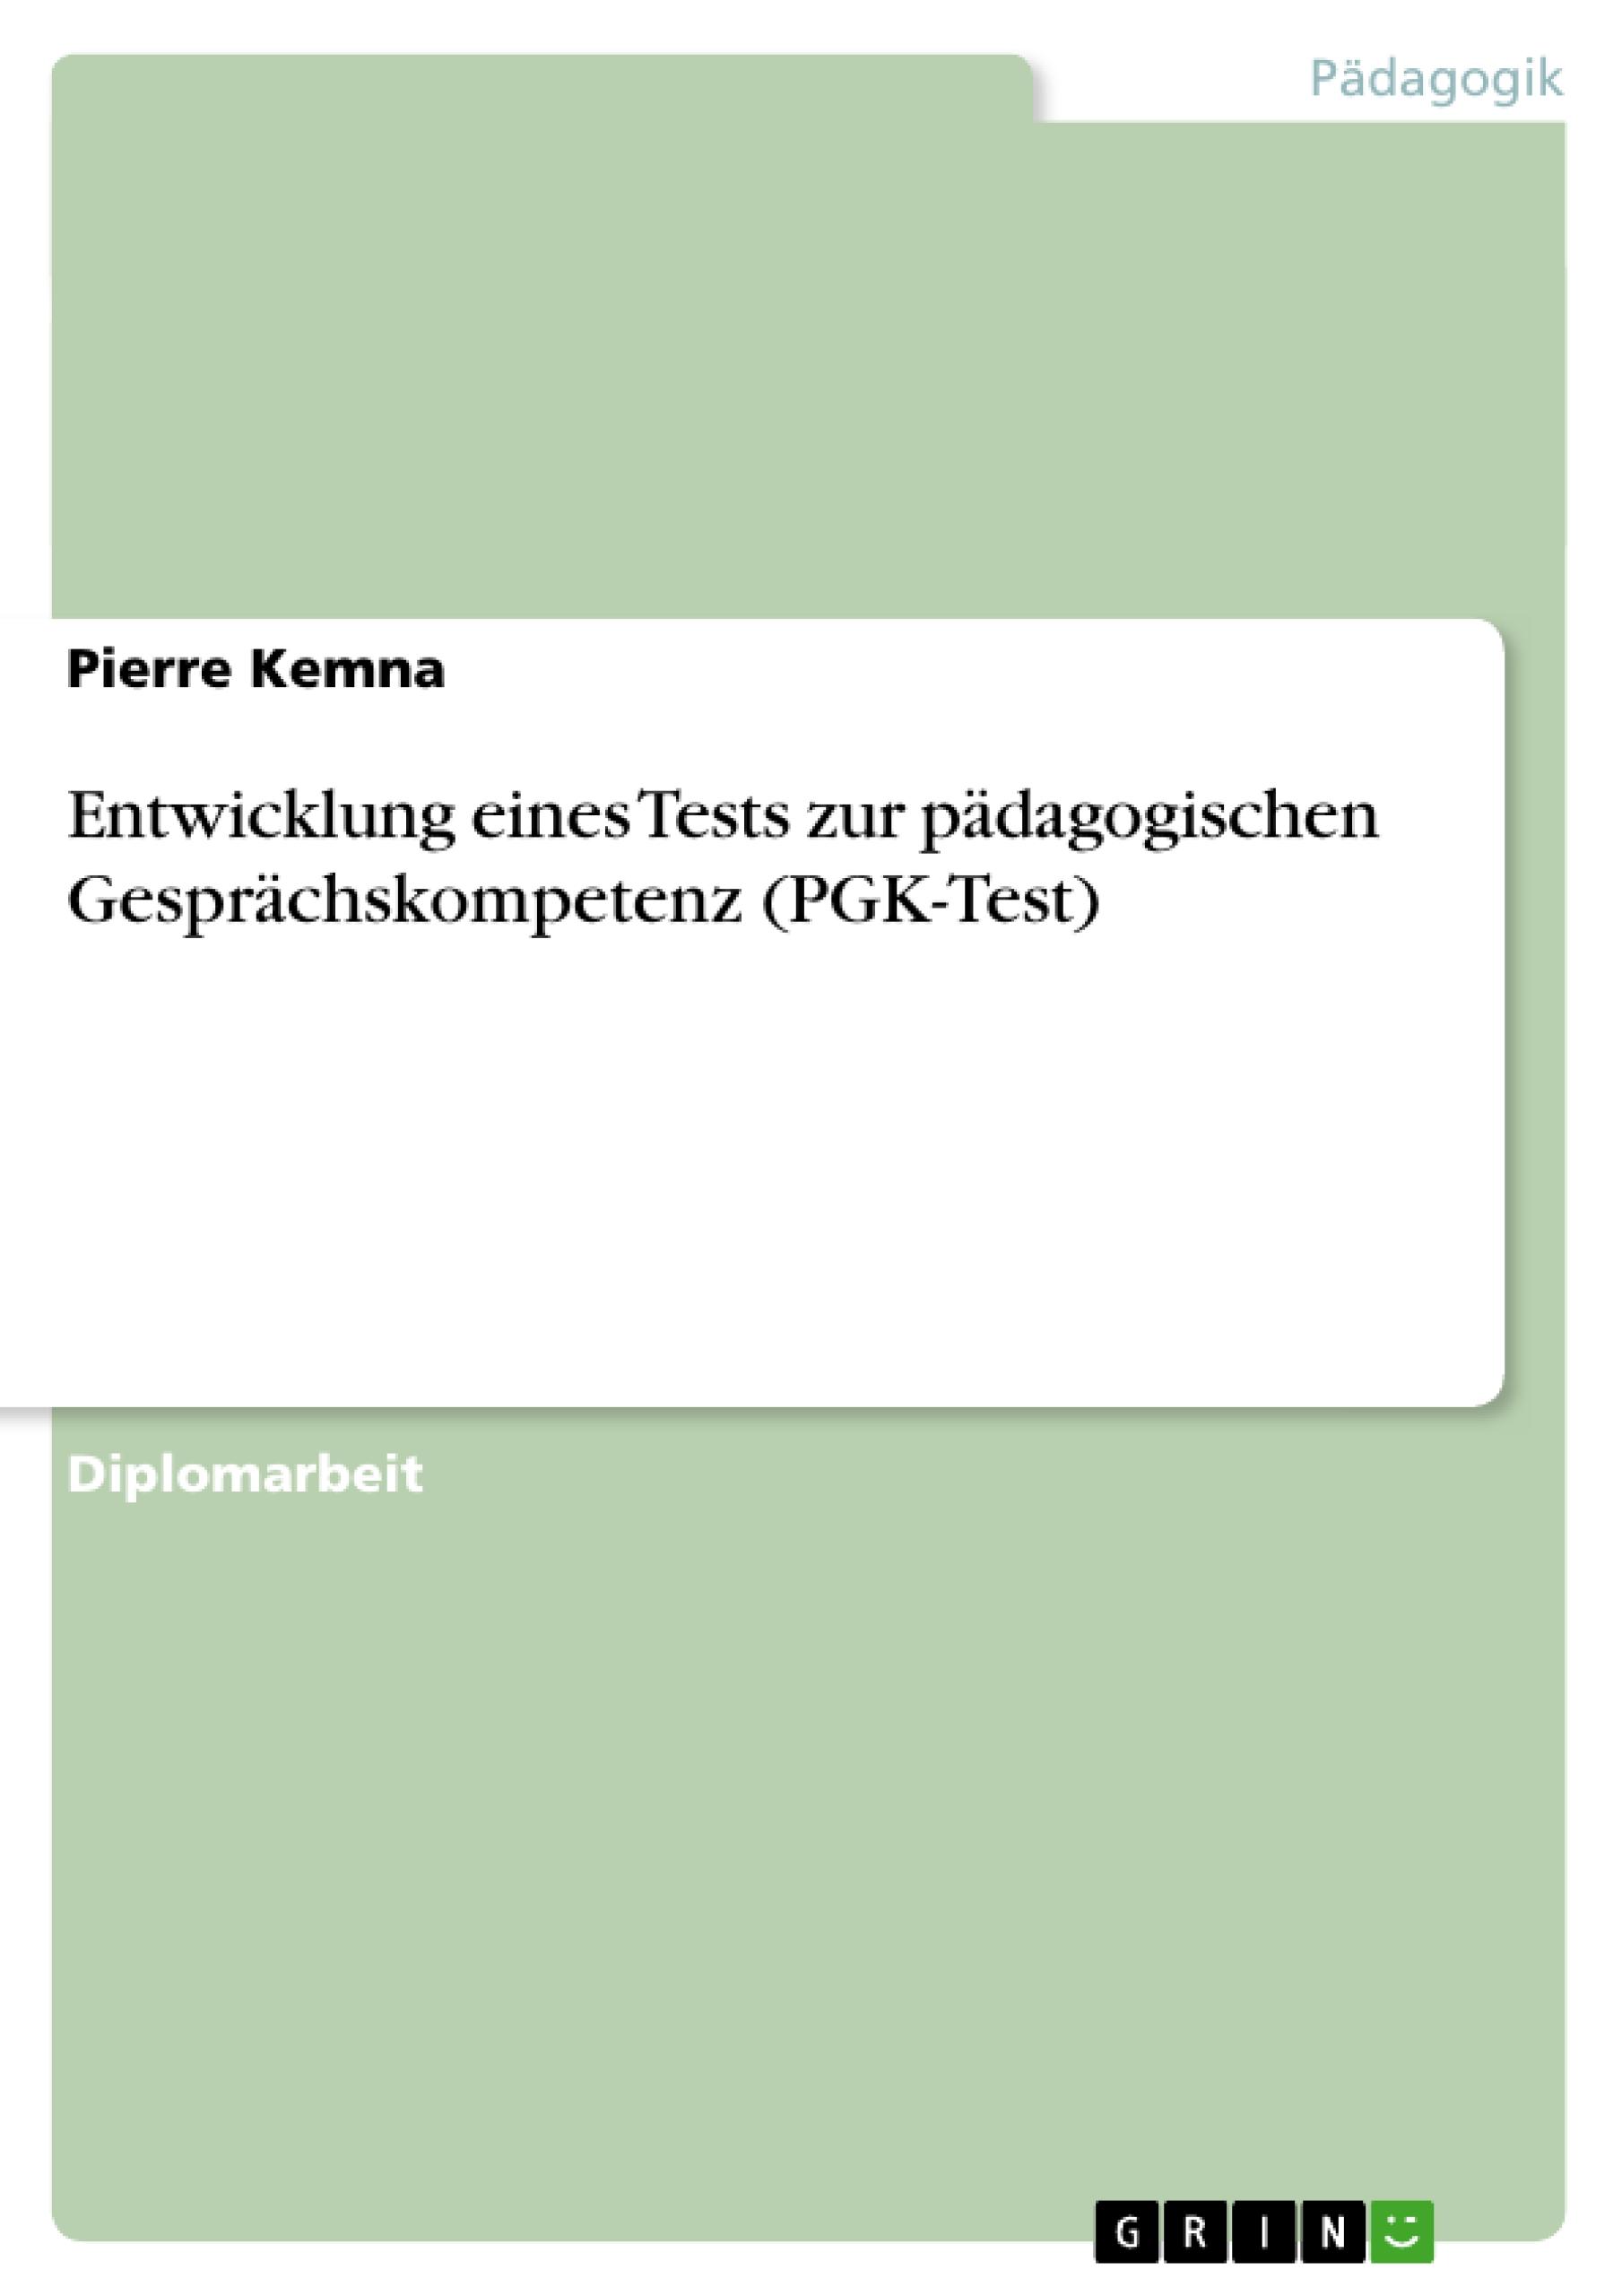 Entwicklung eines Tests zur paedagogischen Gespraechskompetenz (PGK-Test) - Kemna, Pierre